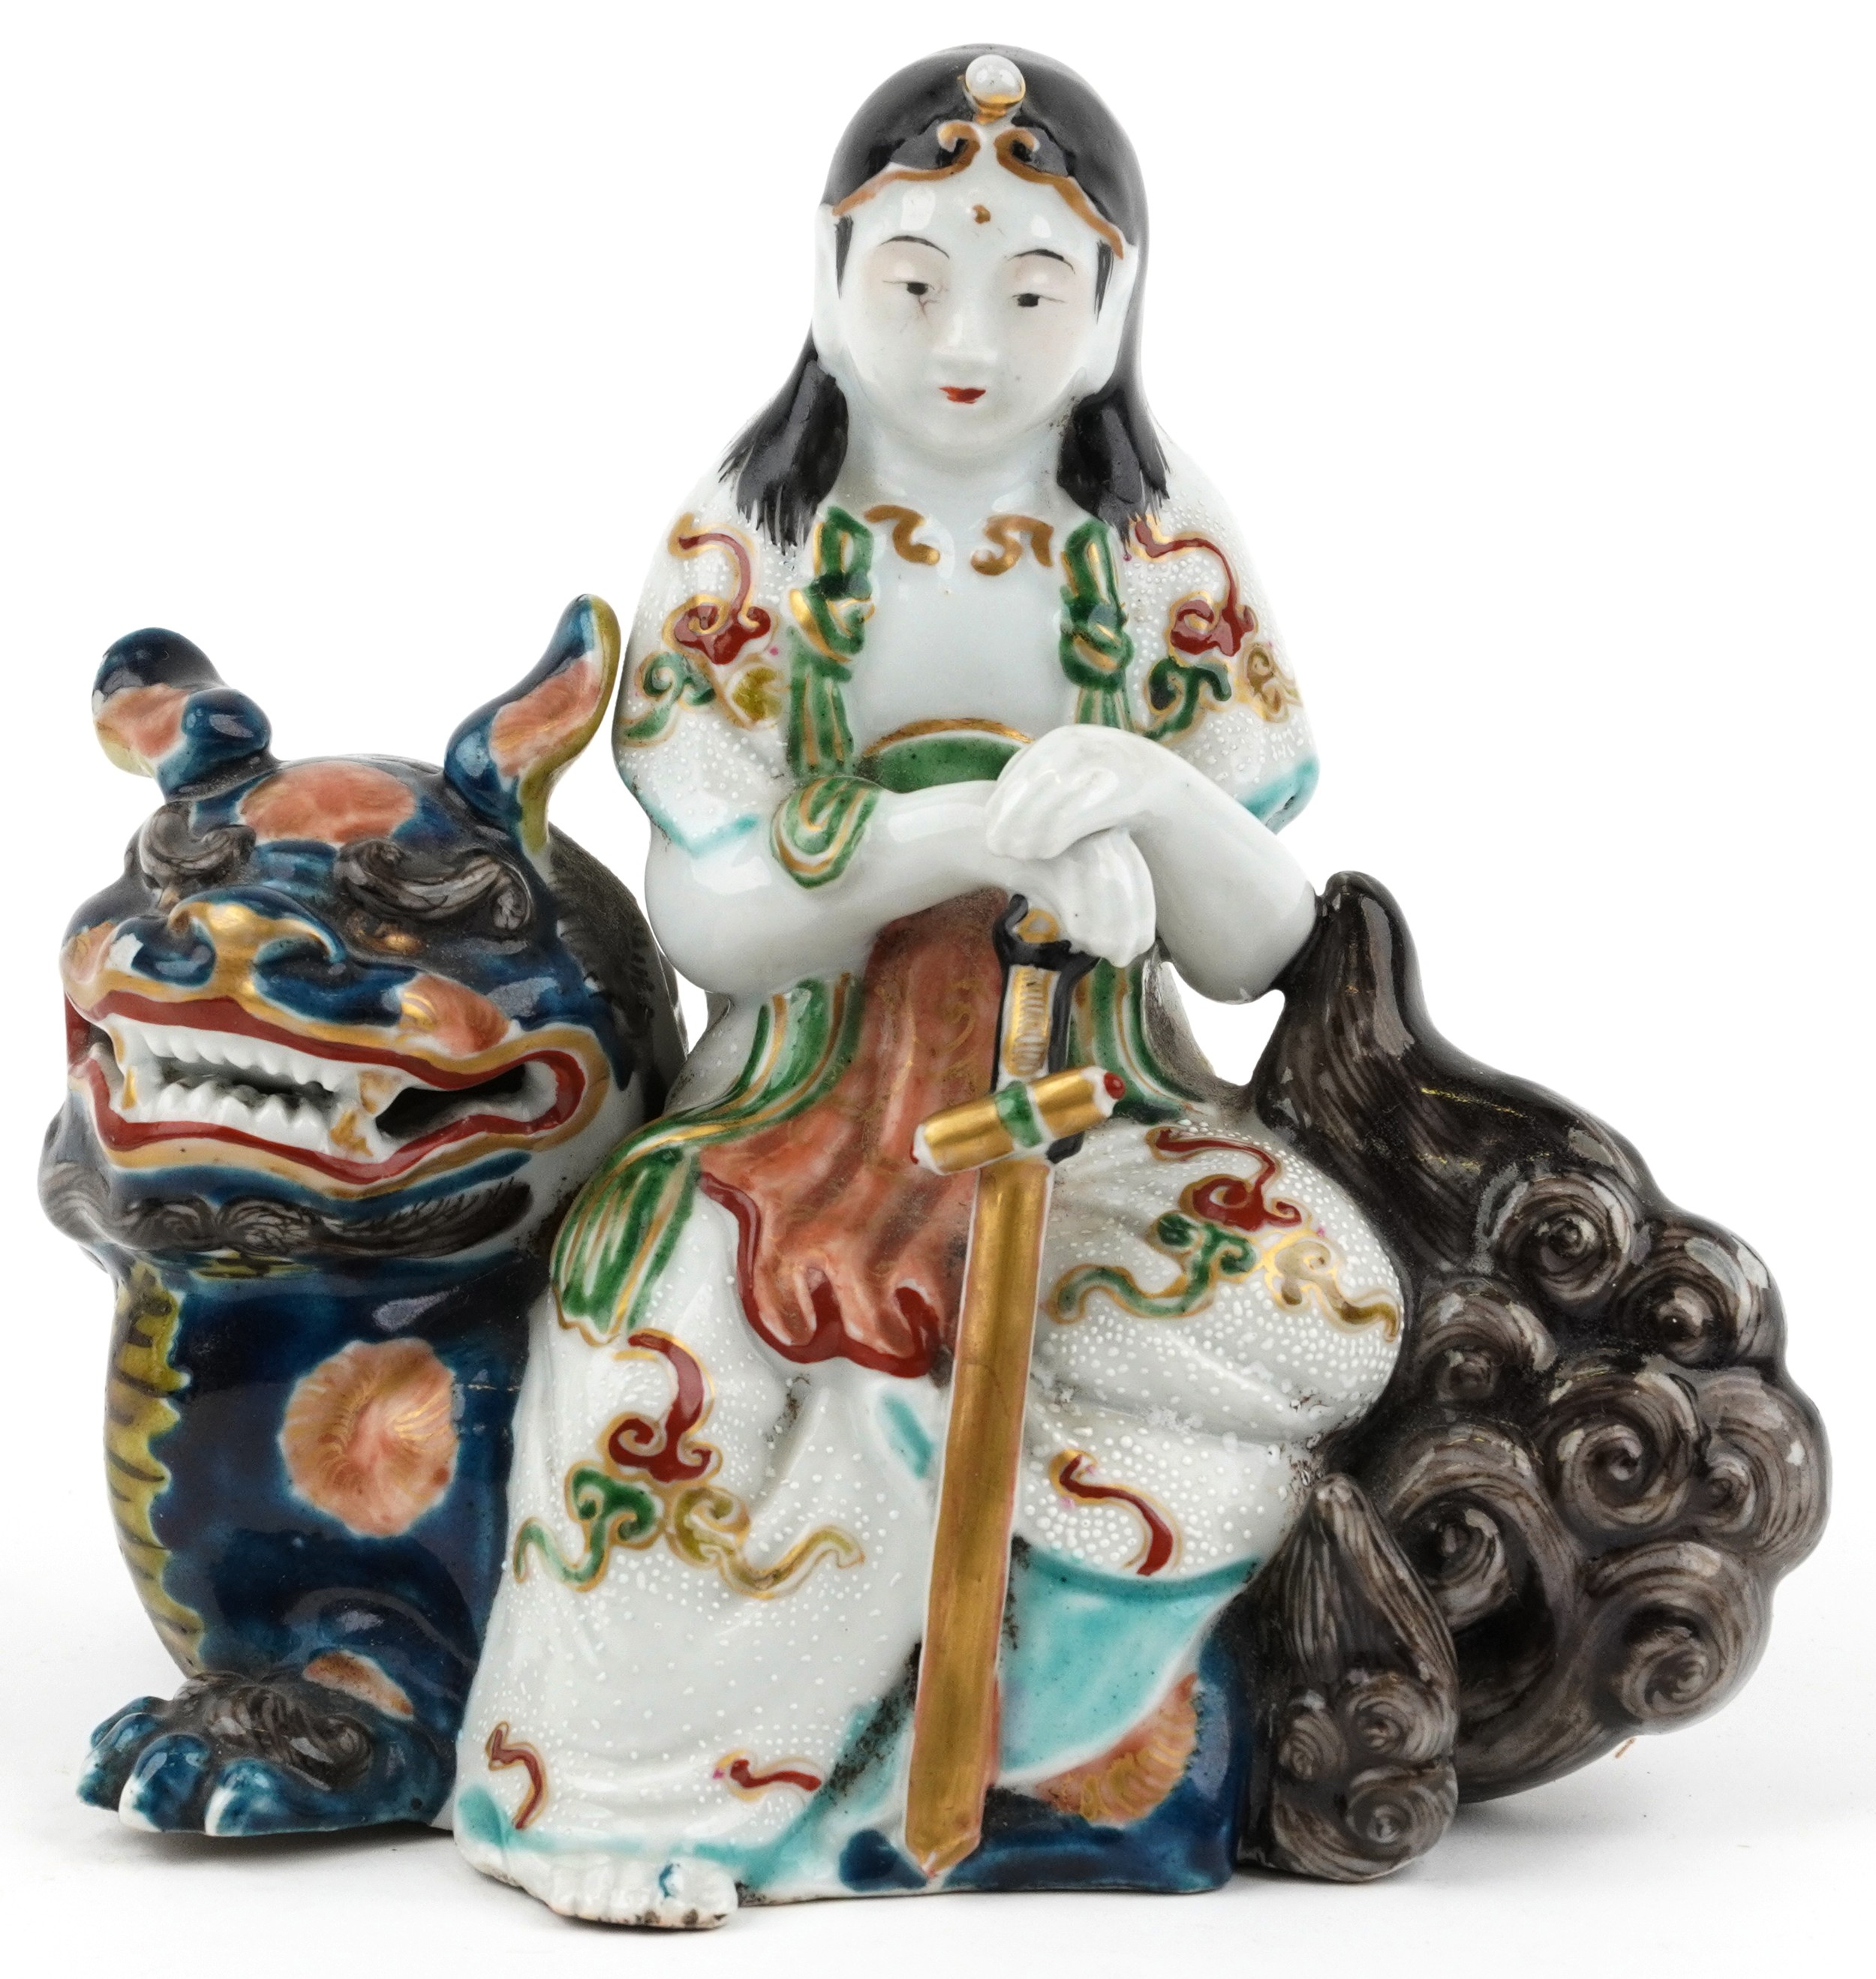 Japanese Kutani porcelain figure of a female on mythical animal, 15.5cm wide